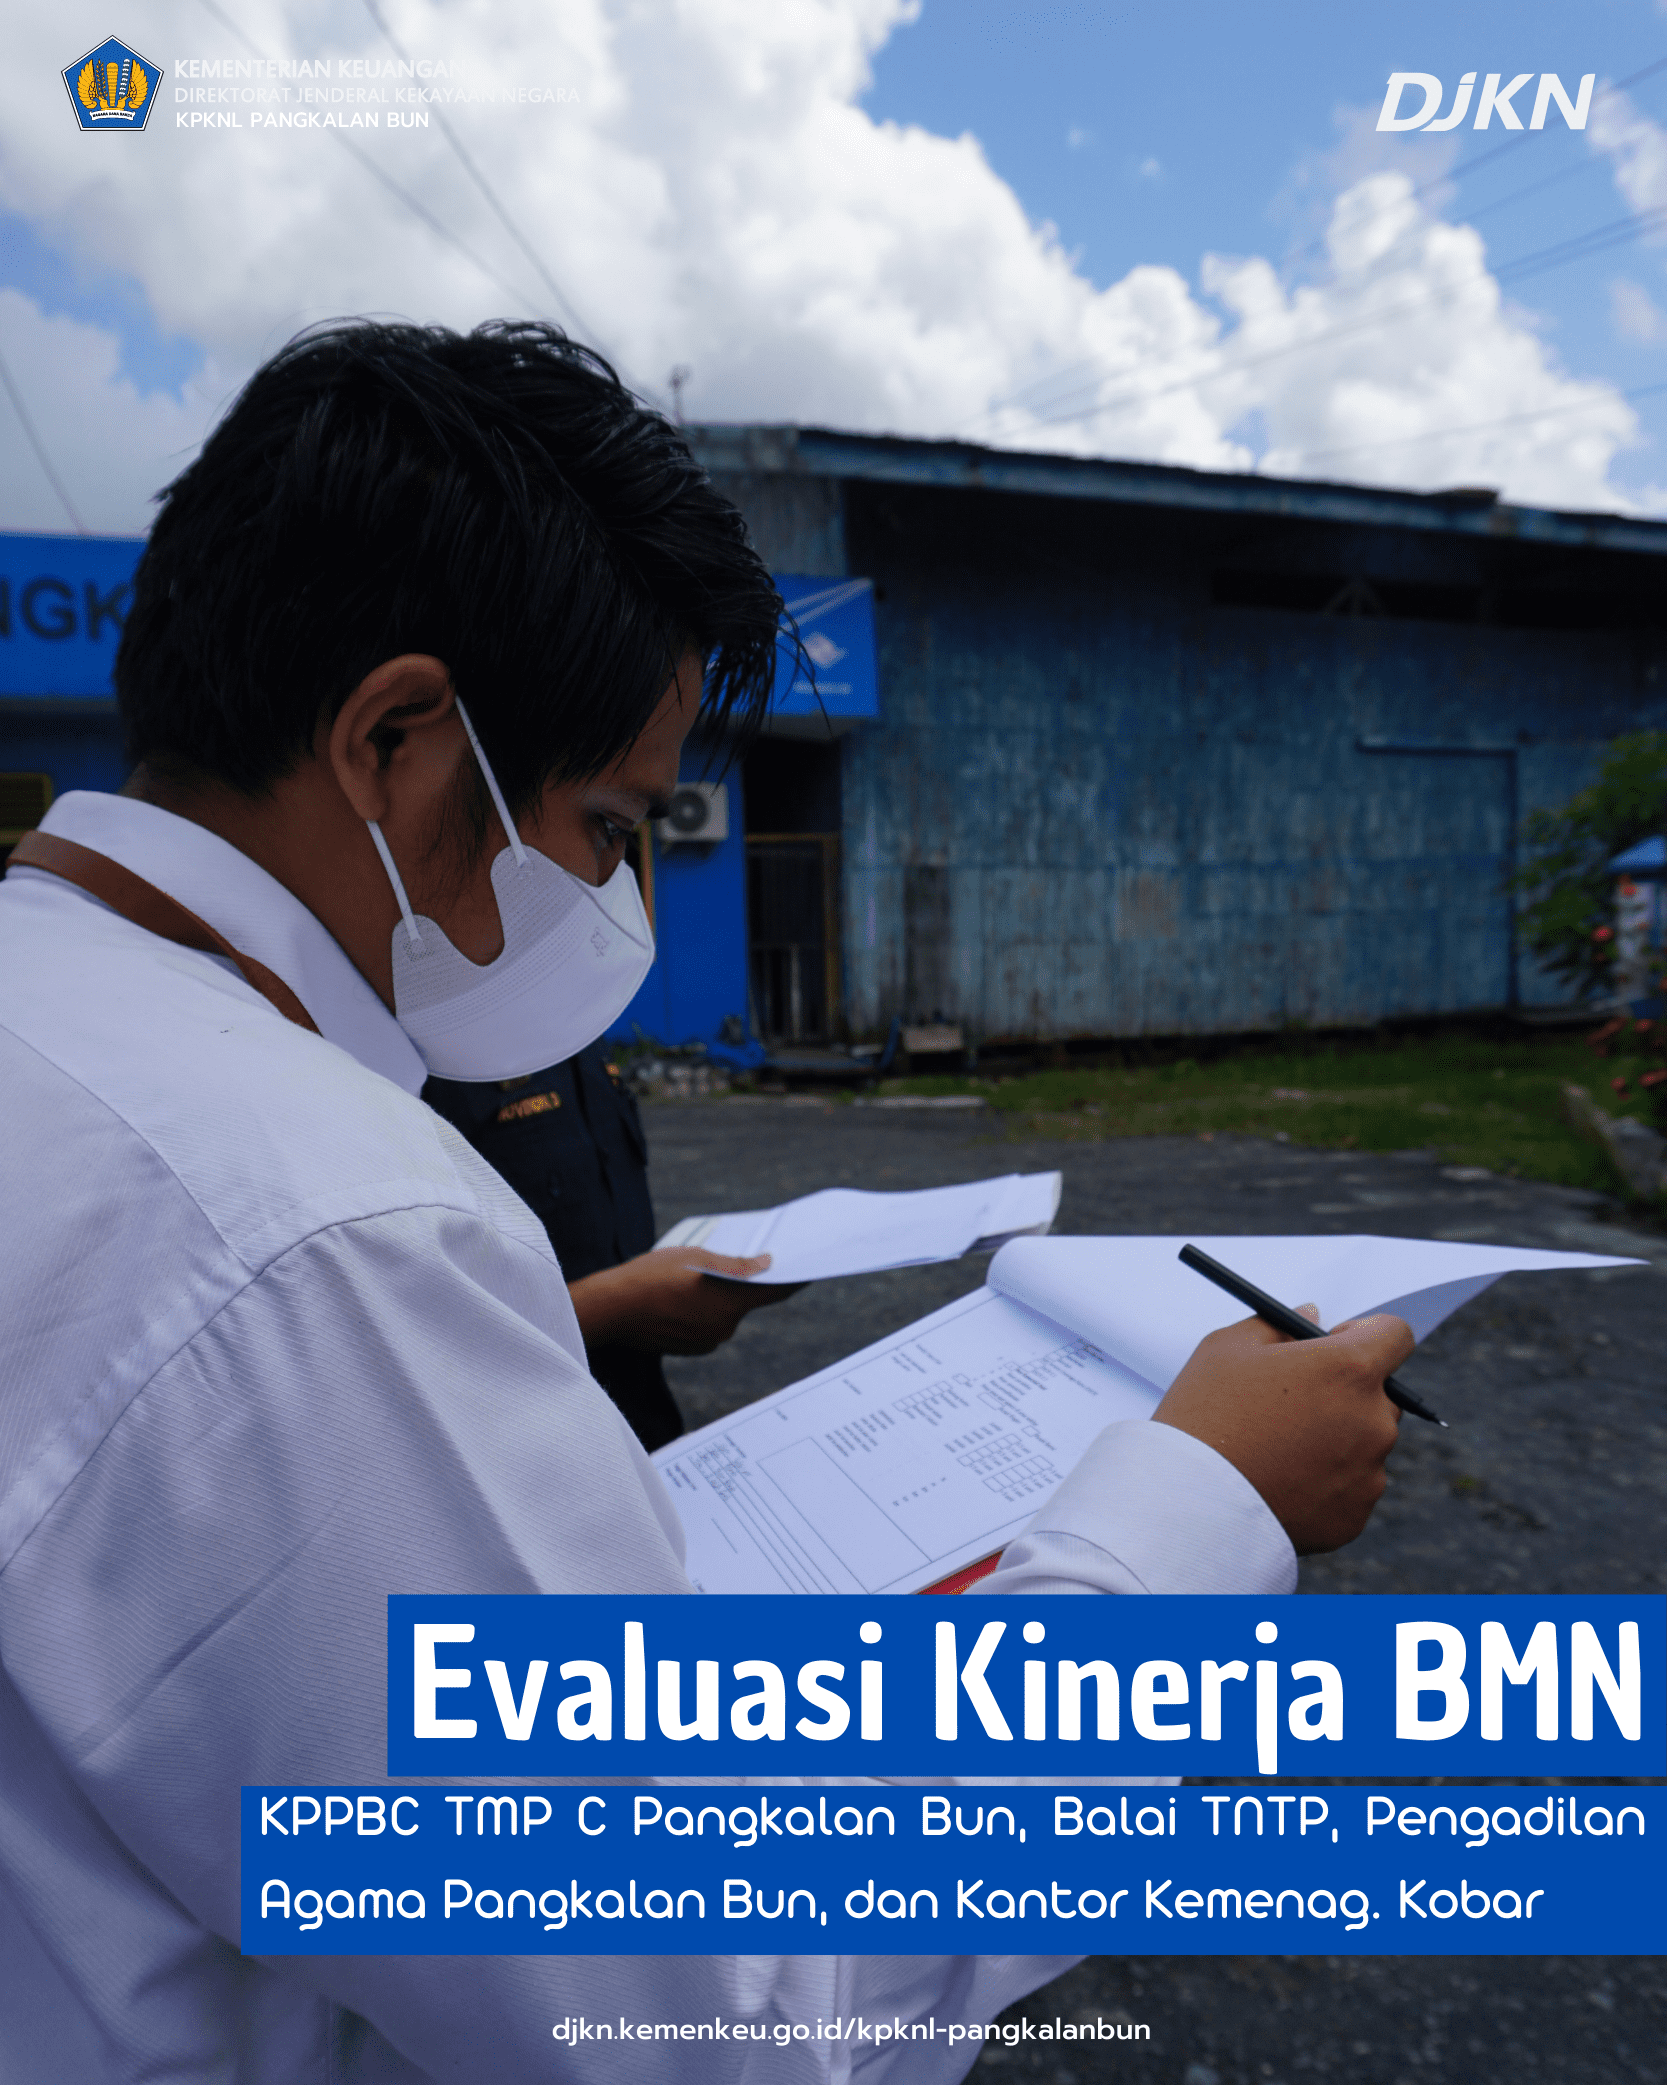 Evaluasi Kinerja BMN di Wilayah Kabupaten Kotawaringin Barat